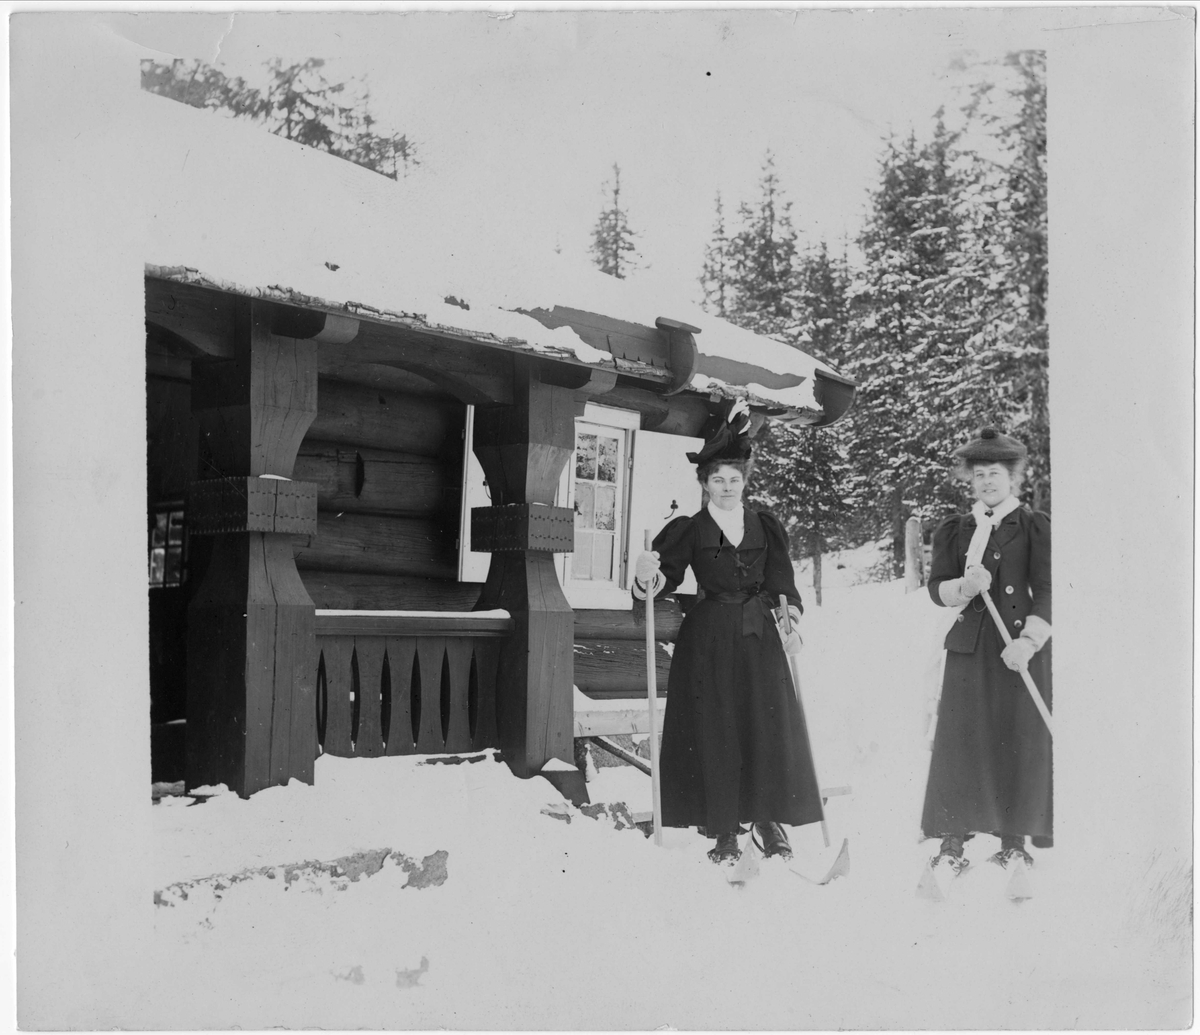 Kvinner på ski foran bygning, ukjent sted.
Serie tatt av Robert Collett (1842-1913), amatørfotograf og professor i zoologi. 